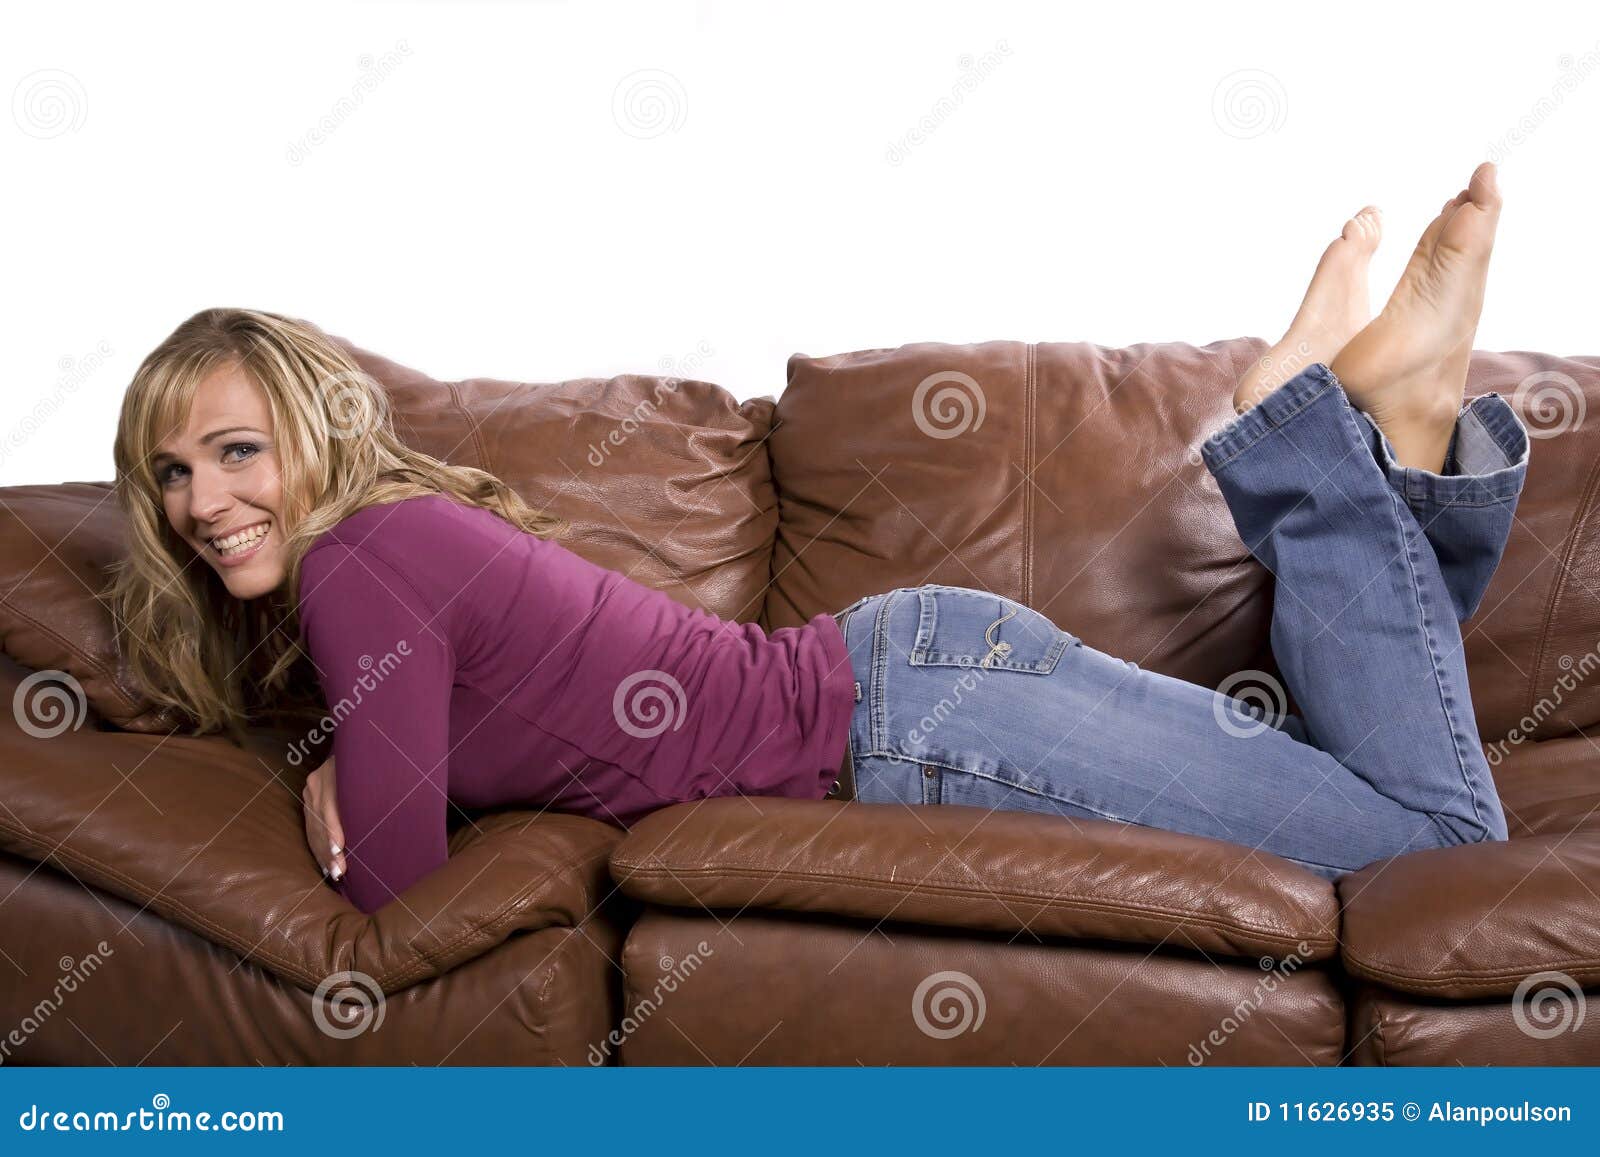 Frau Auf Couchfüßen Oben Stockbild Bild Von Couchfüßen 11626935 